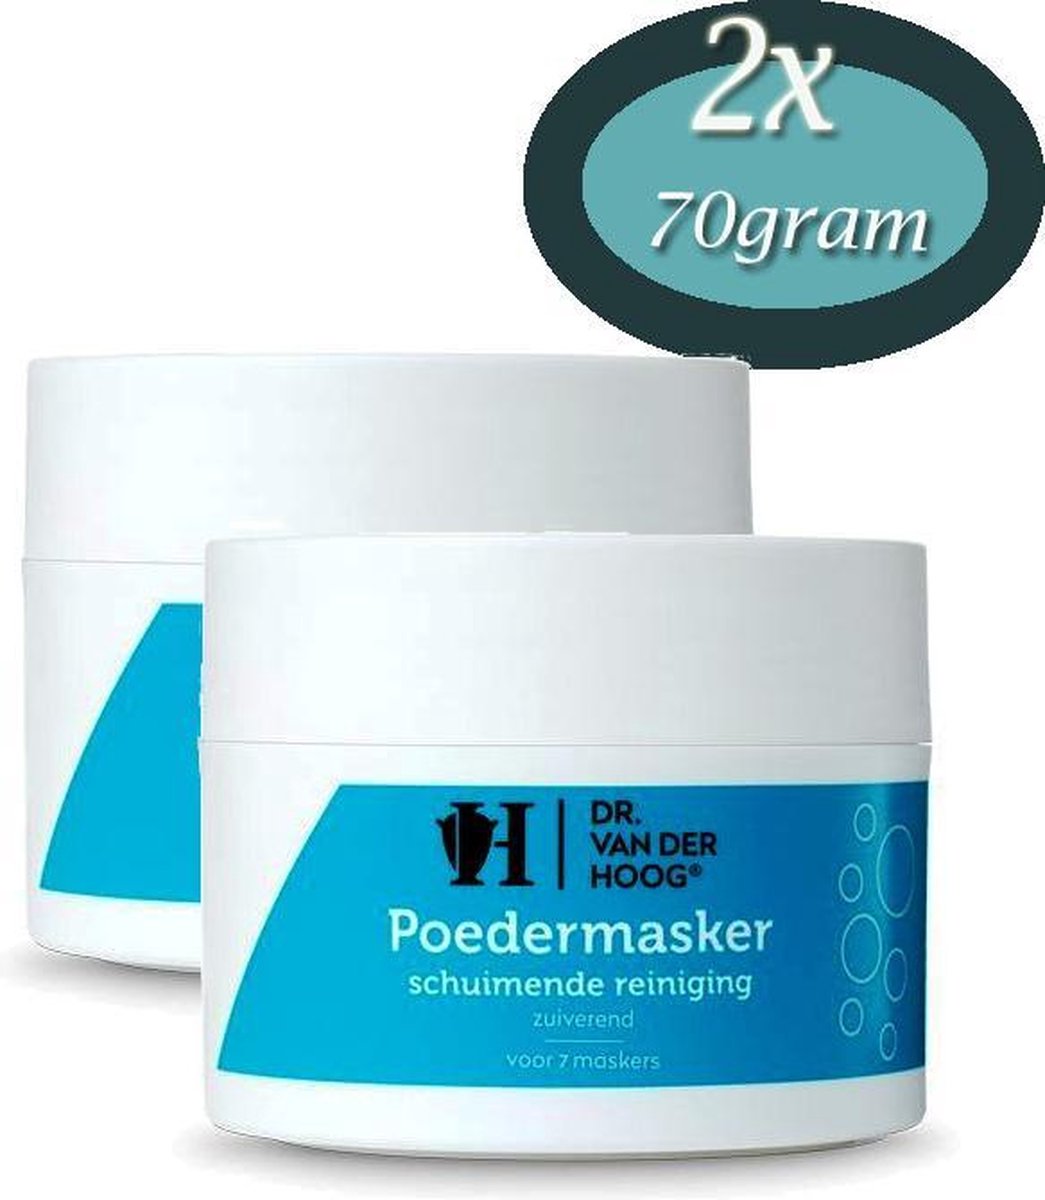 Dr Vd Hoog - Poedermasker - Schuim Reiniger - 2x 70 gram - Voordeelverpakking - voor 14 Maskers